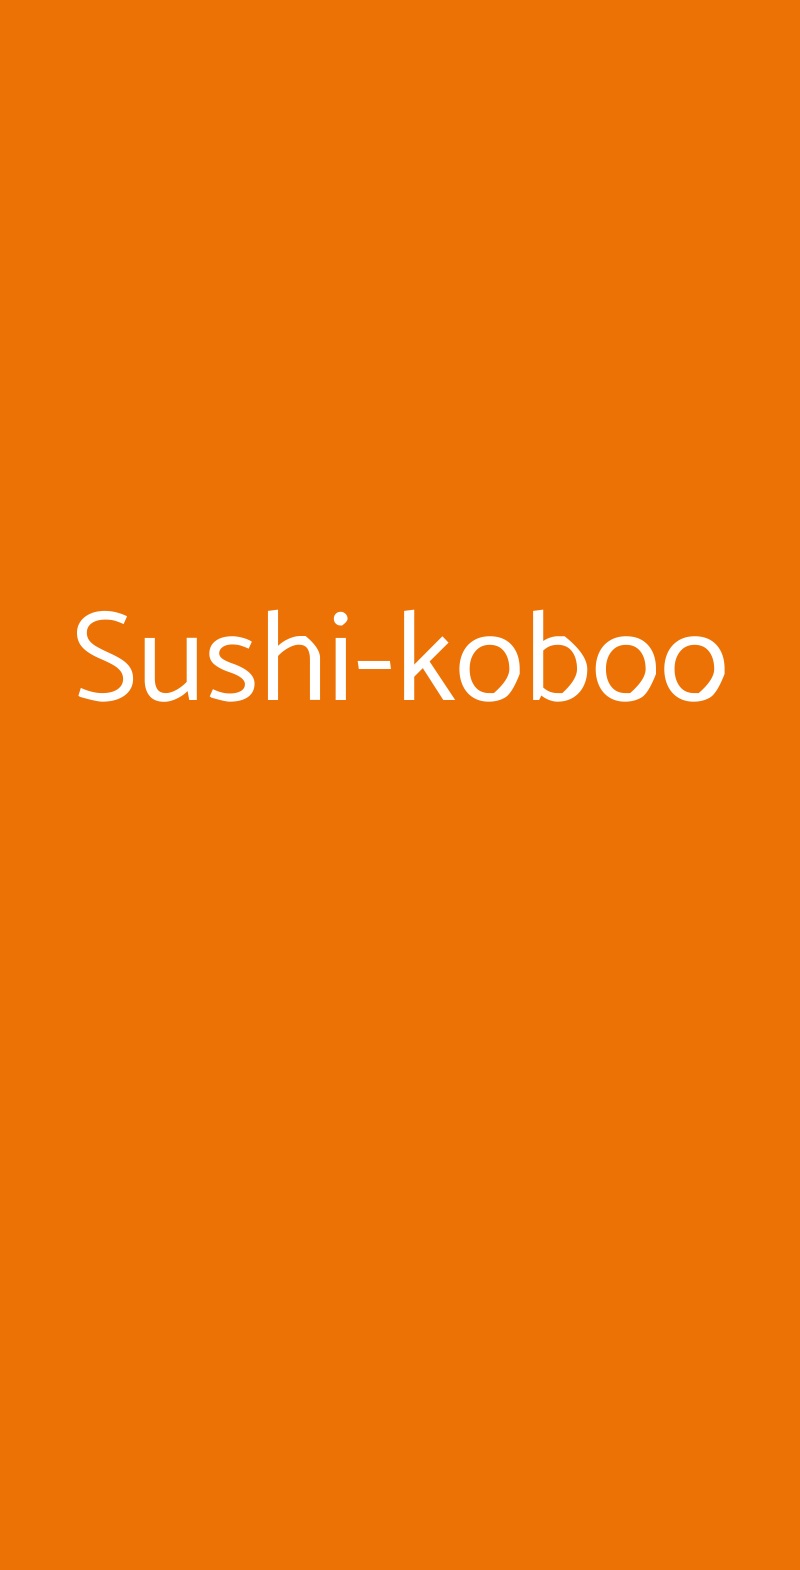 Sushi-koboo Milano menù 1 pagina